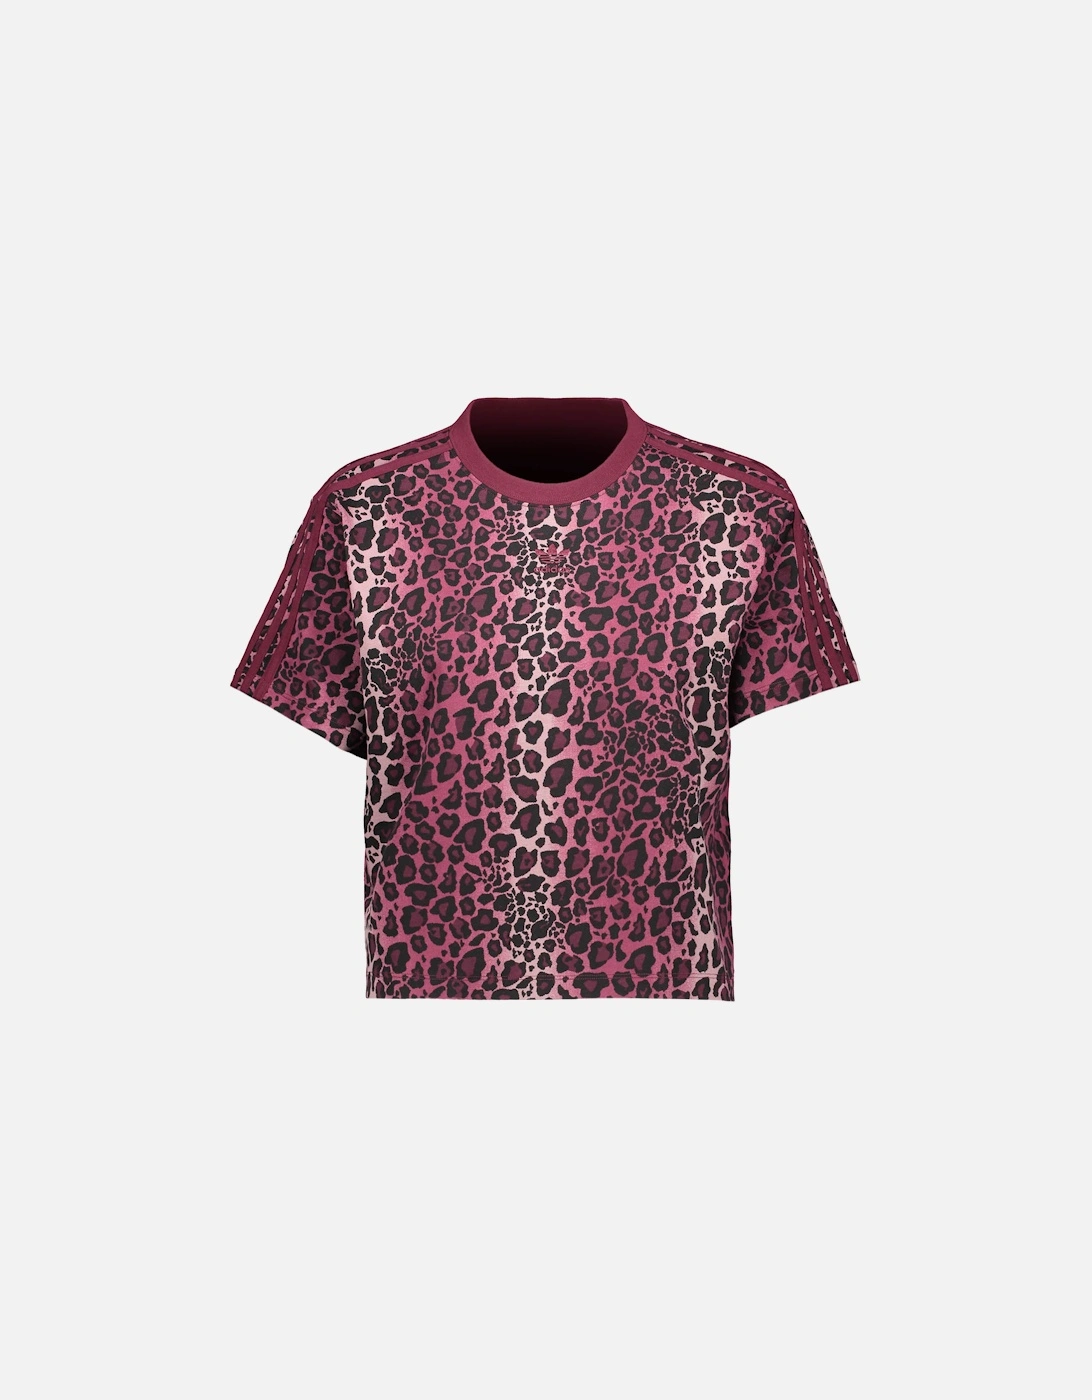 Women's T-shirt - Pink leopard Print, 3 of 2